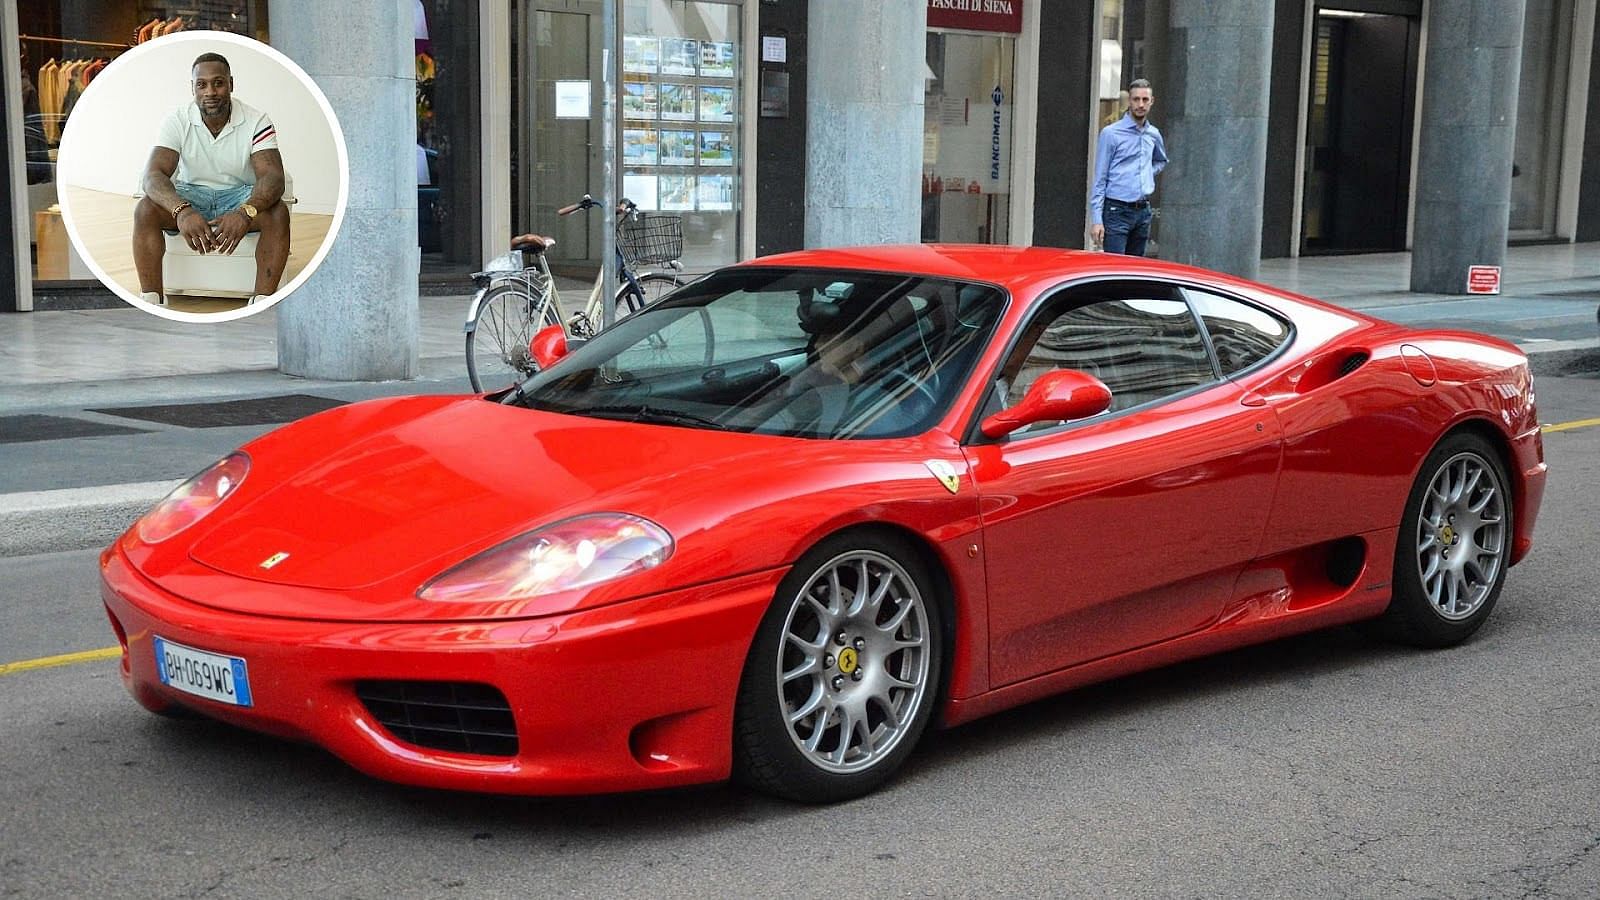 Thomas Jones’ Ferrari 360 Modena